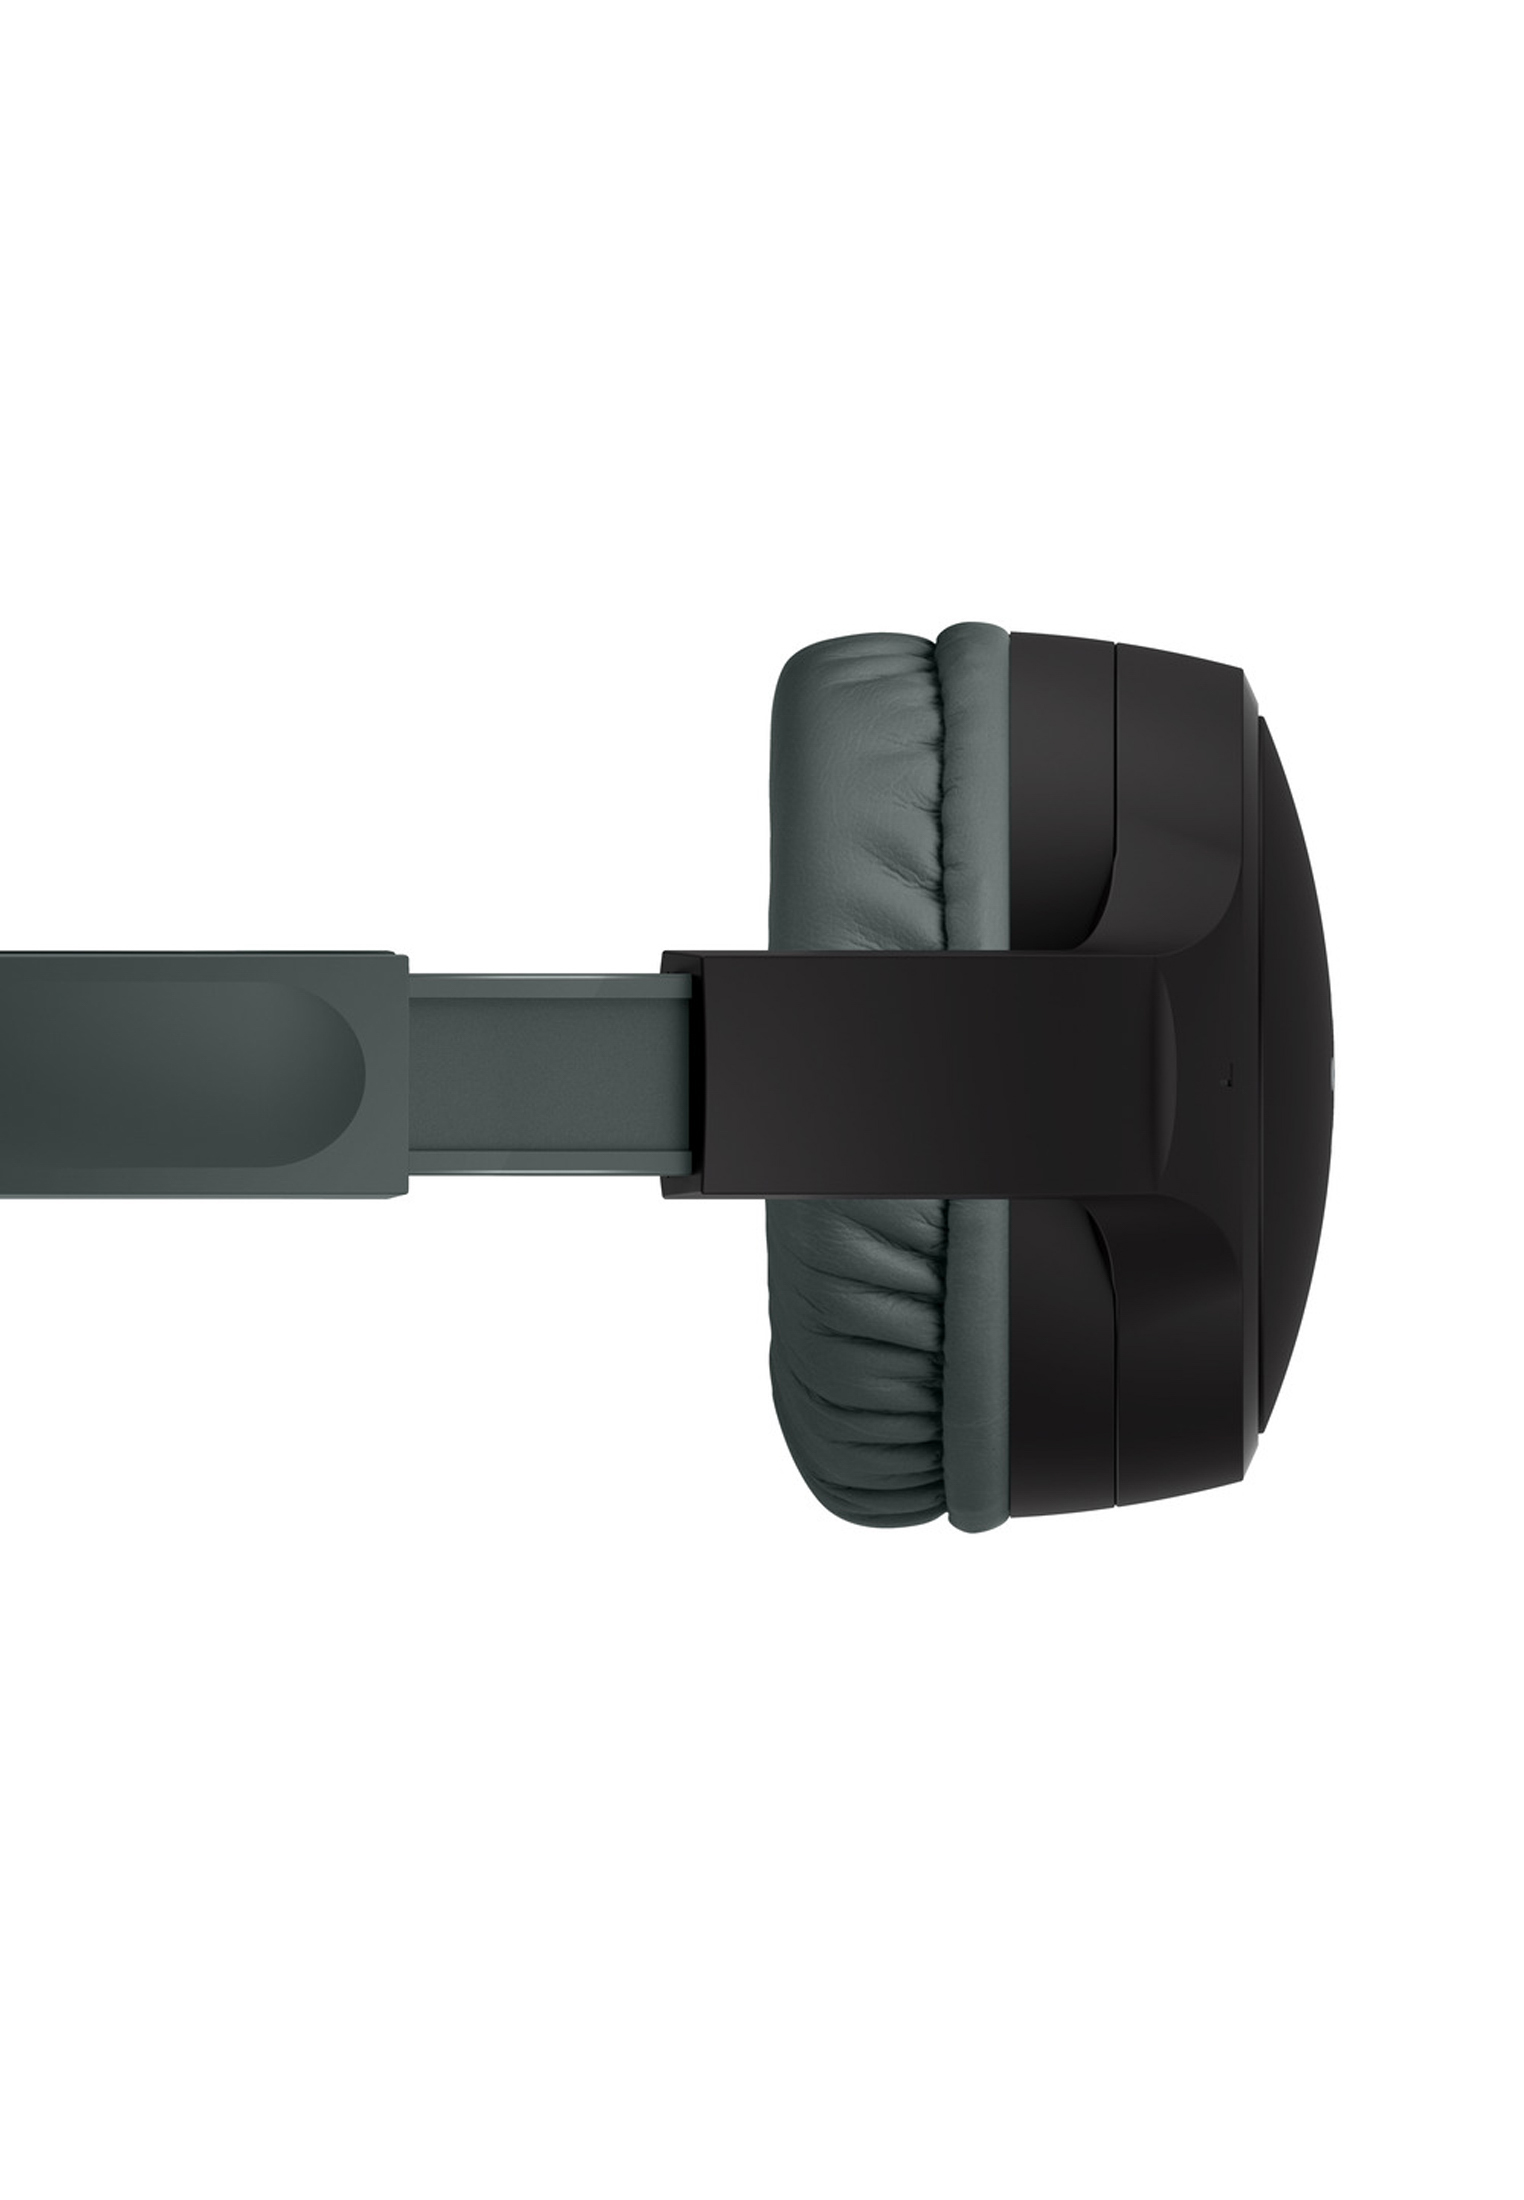 BELKIN On-Ear-Kinderkopfhörer Mini, On-ear schwarz Bluetooth SOUNDFORM™